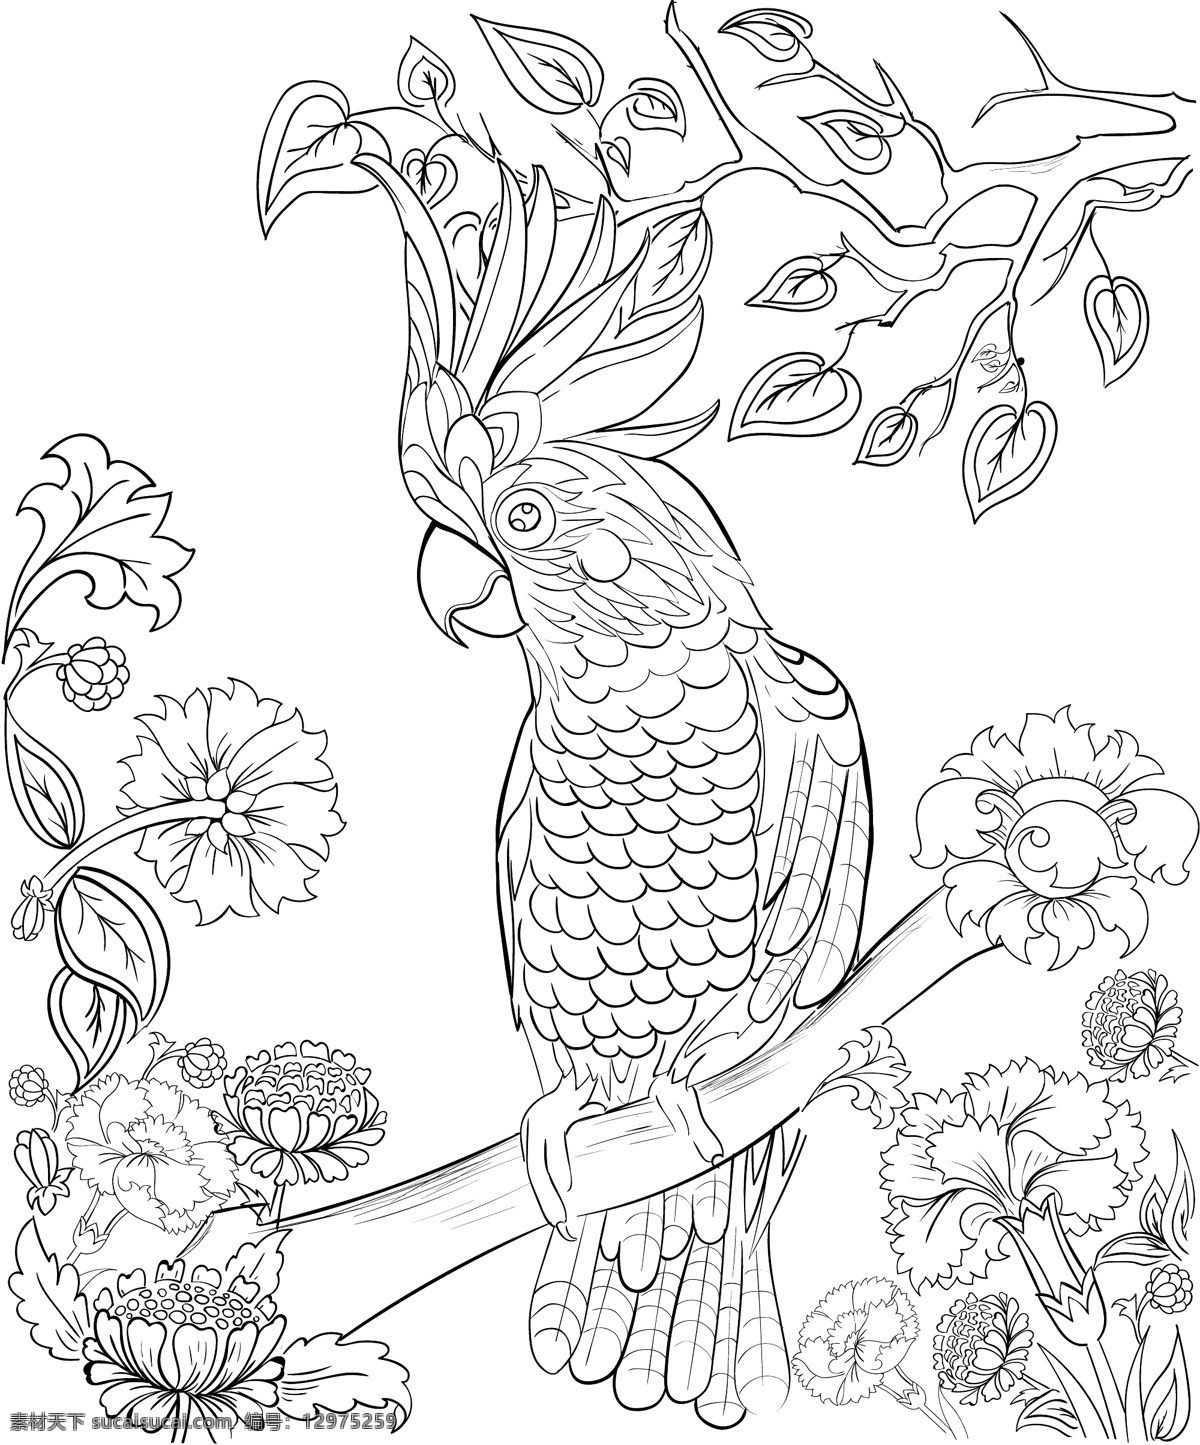 白描 手绘 鹦鹉 插画 植物 唯美 树枝 白搭 花朵